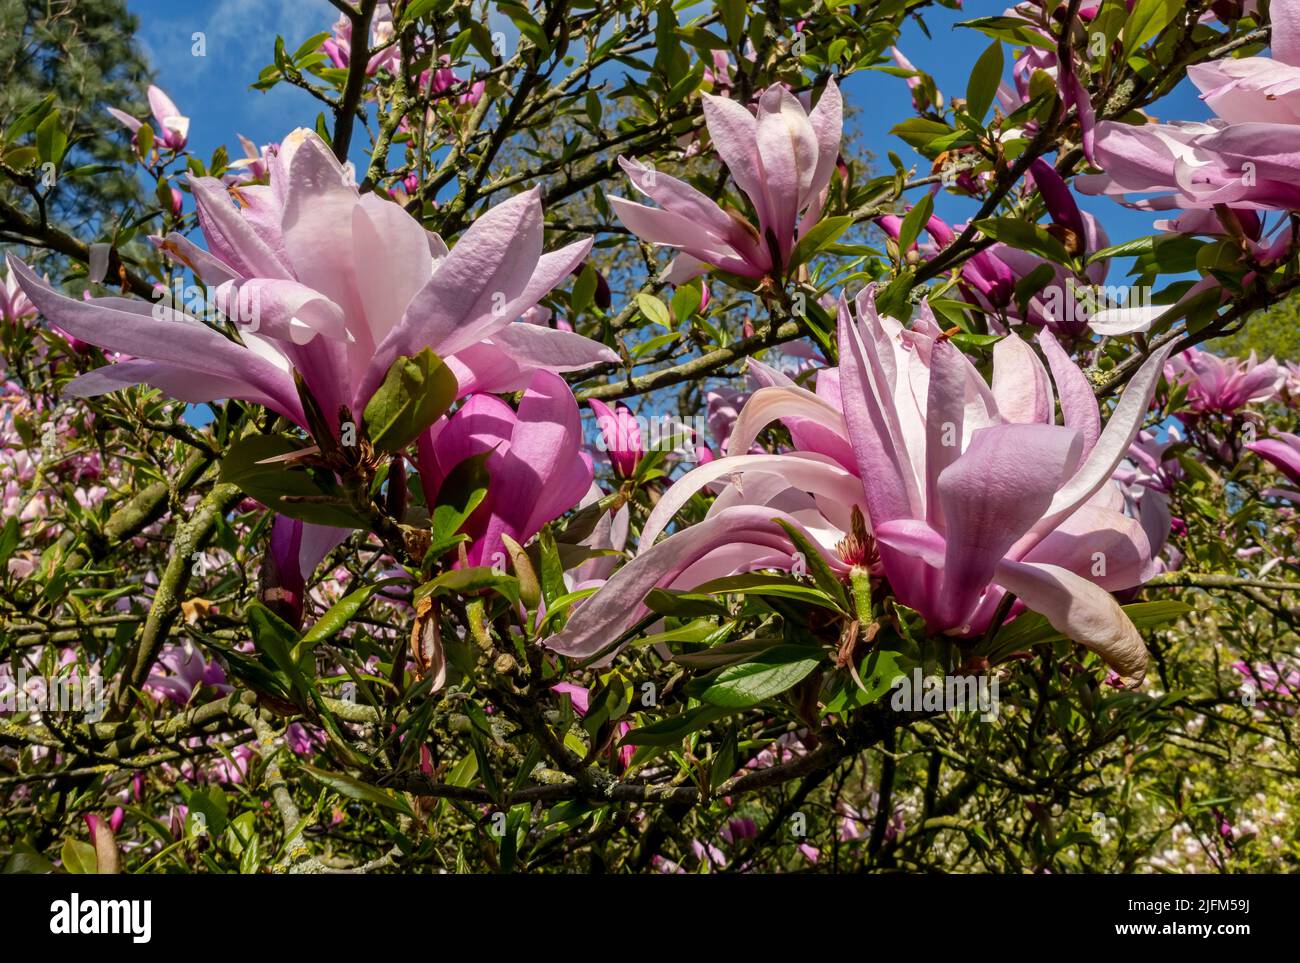 Gros plan de Magnolia soulangeana 'Lennei' magnoliaceae fleurs roses fleurs fleuries au printemps Angleterre Royaume-Uni Grande-Bretagne Banque D'Images